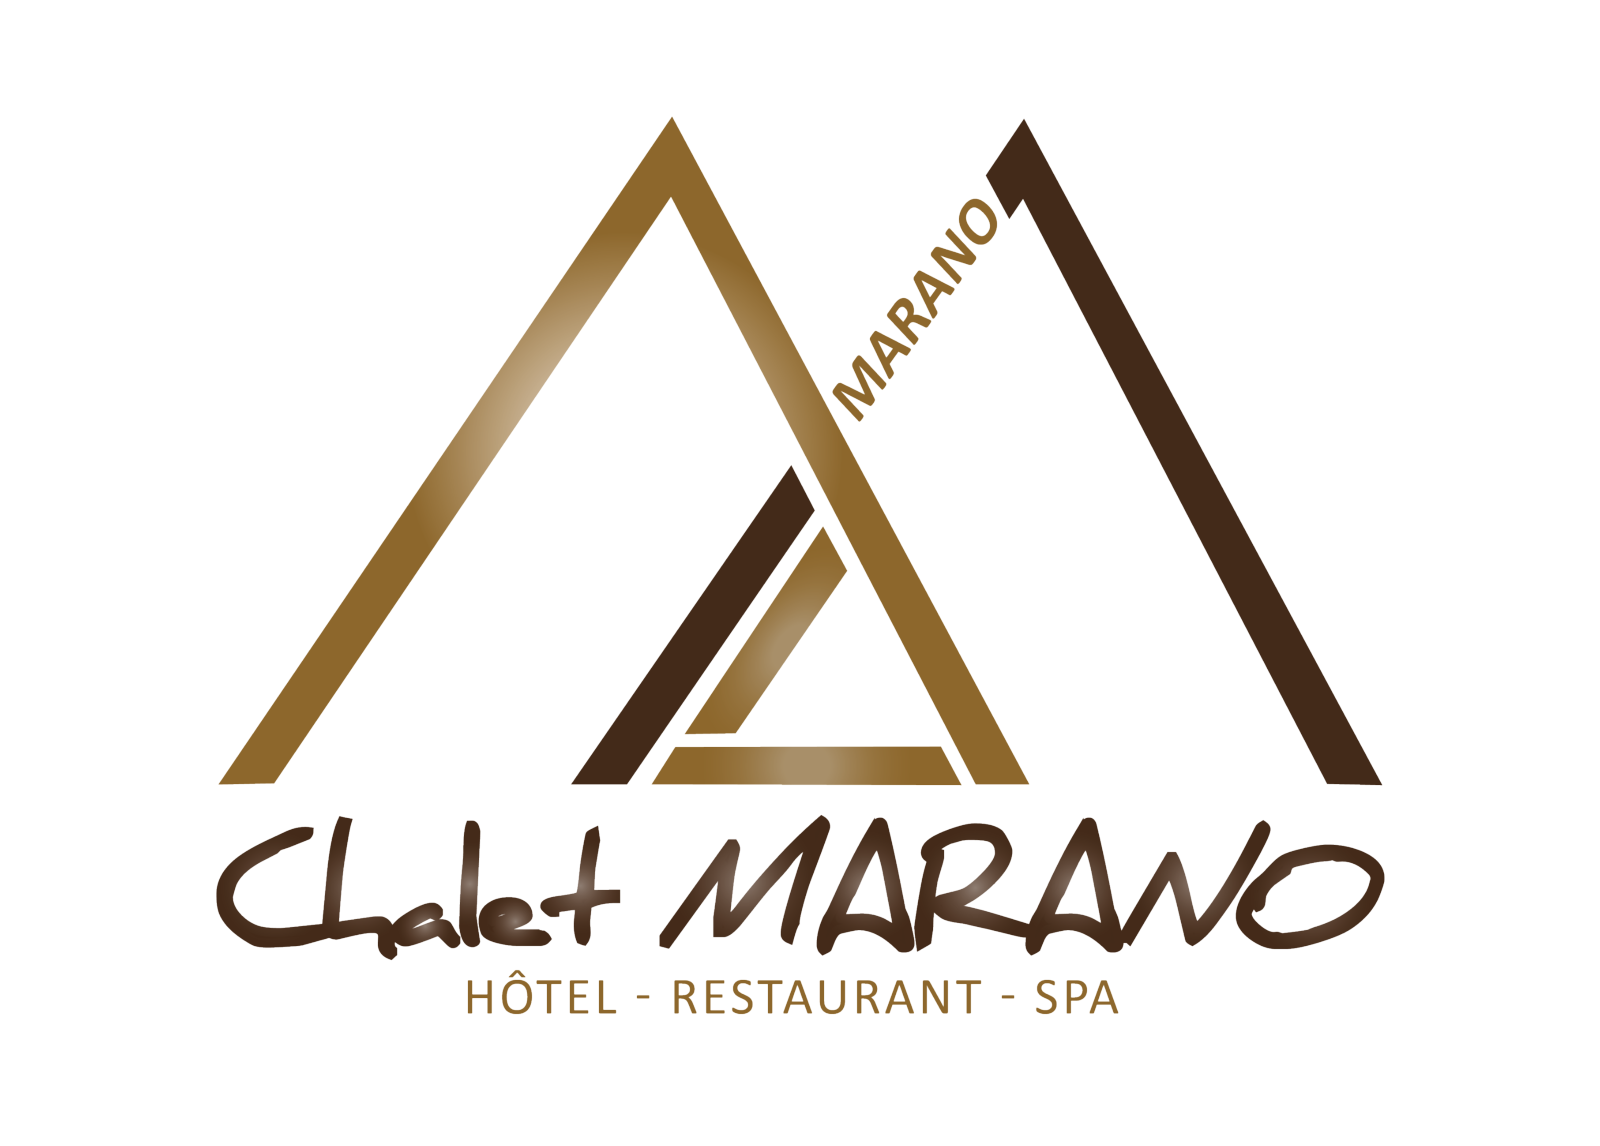 Hôtel Chalet Marano Restaurant & Spa